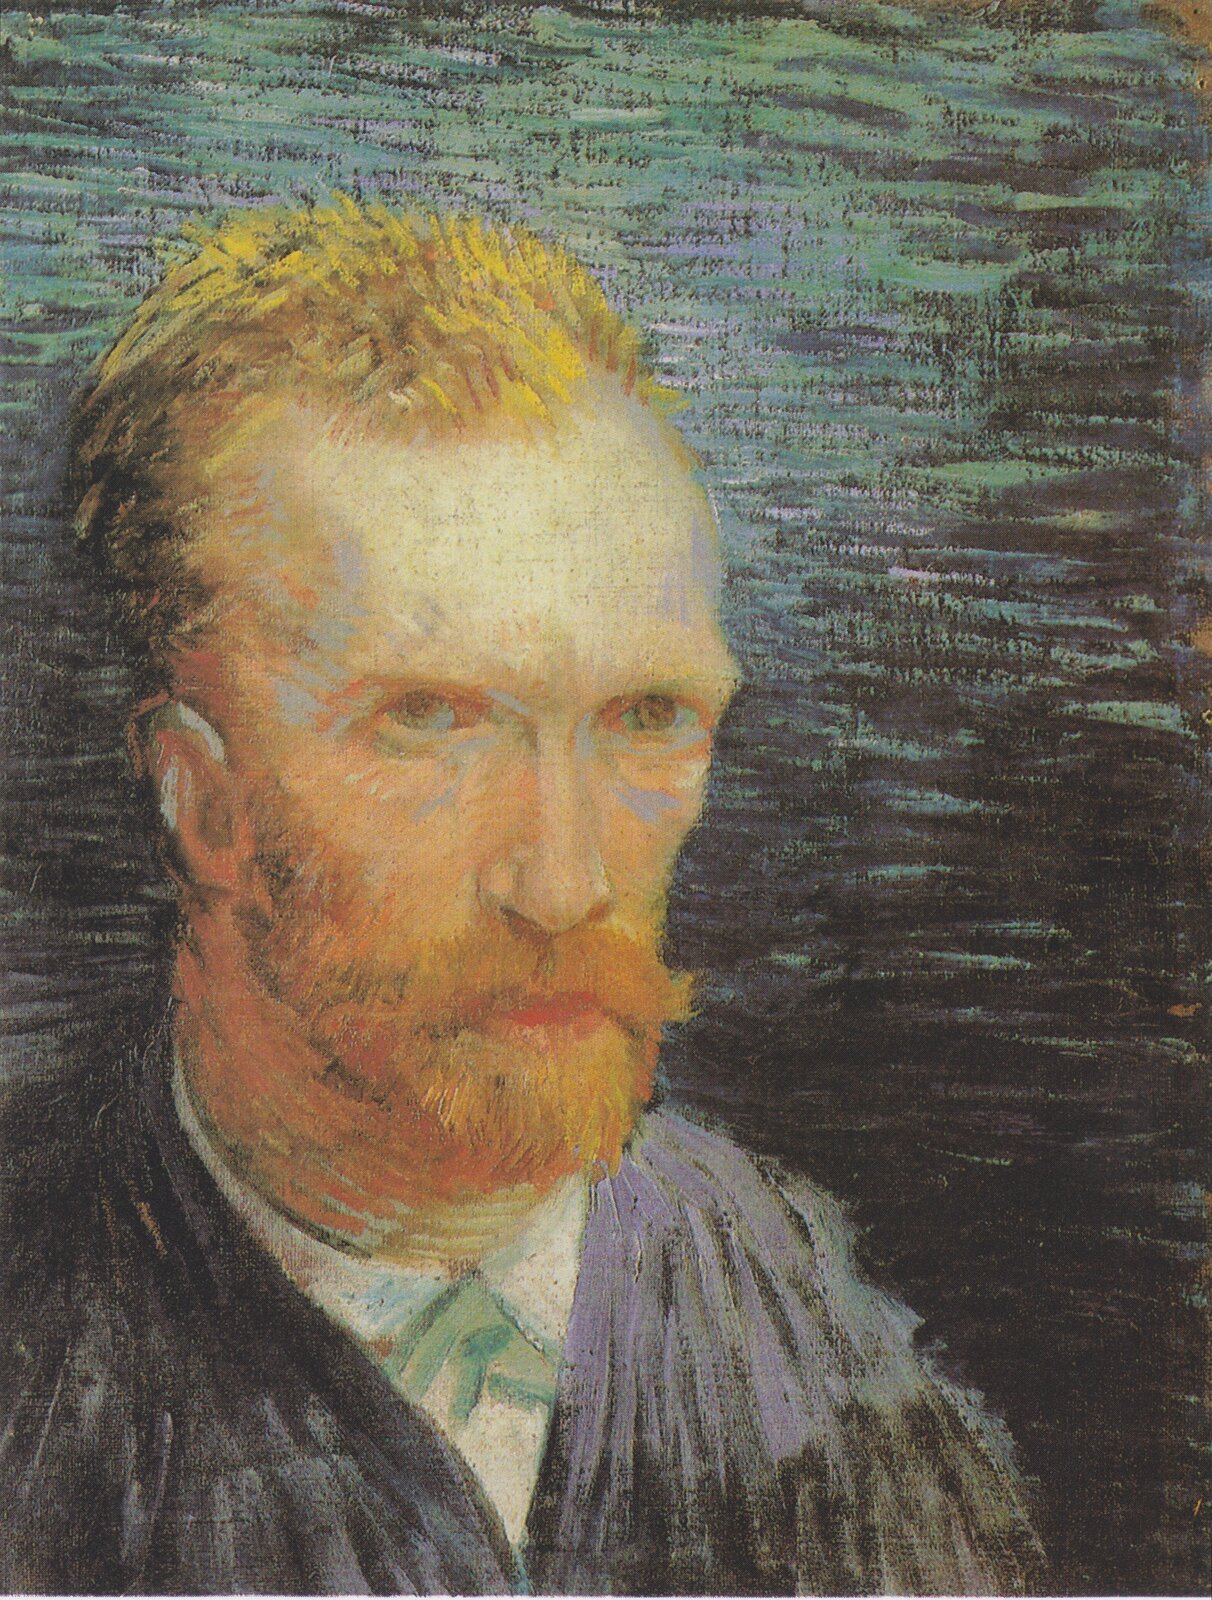 Autoportret Źródło: Vincent van Gogh, Autoportret, 1887, olej na płótnie zamontowany na tekturze, Van Gogh Museum, Amsterdam, domena publiczna.